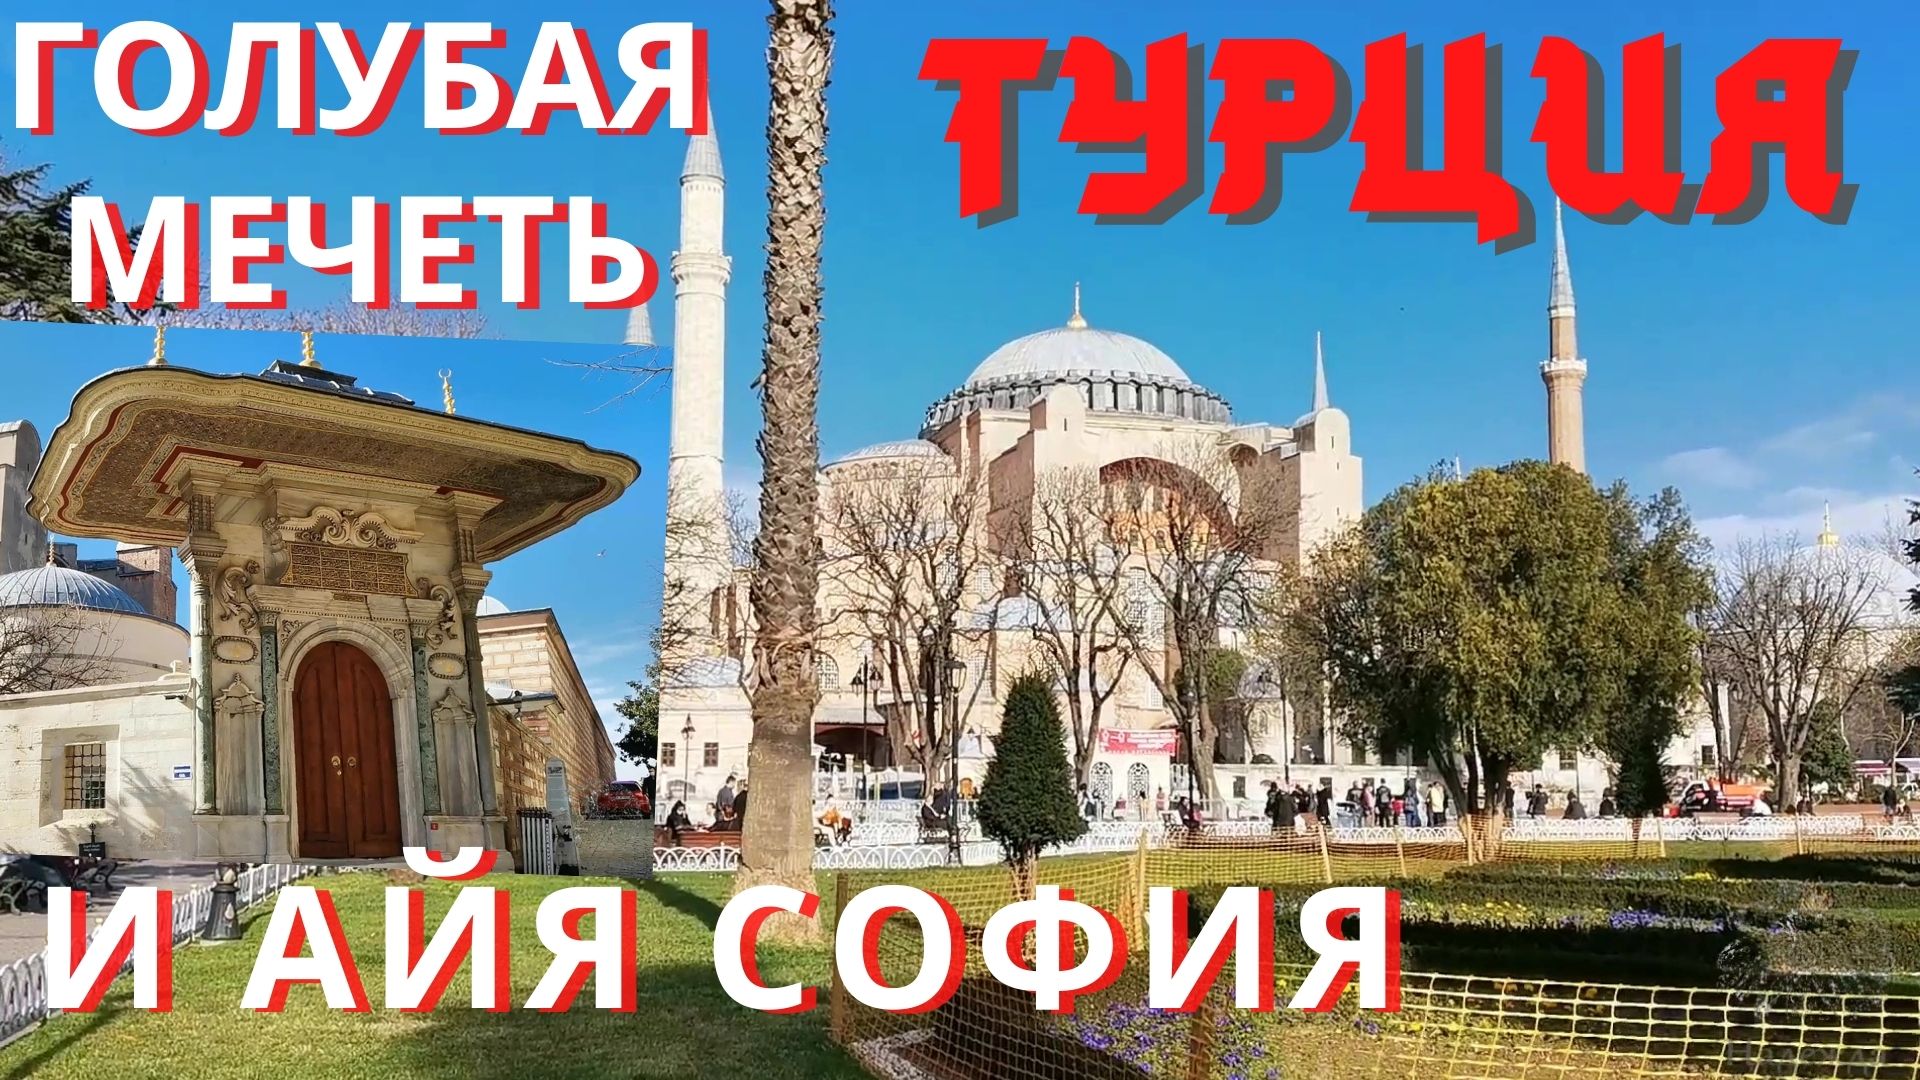 Турция 2021 Стамбул Святая София и Голубая мечеть, что не так? Ахнули от увиденного